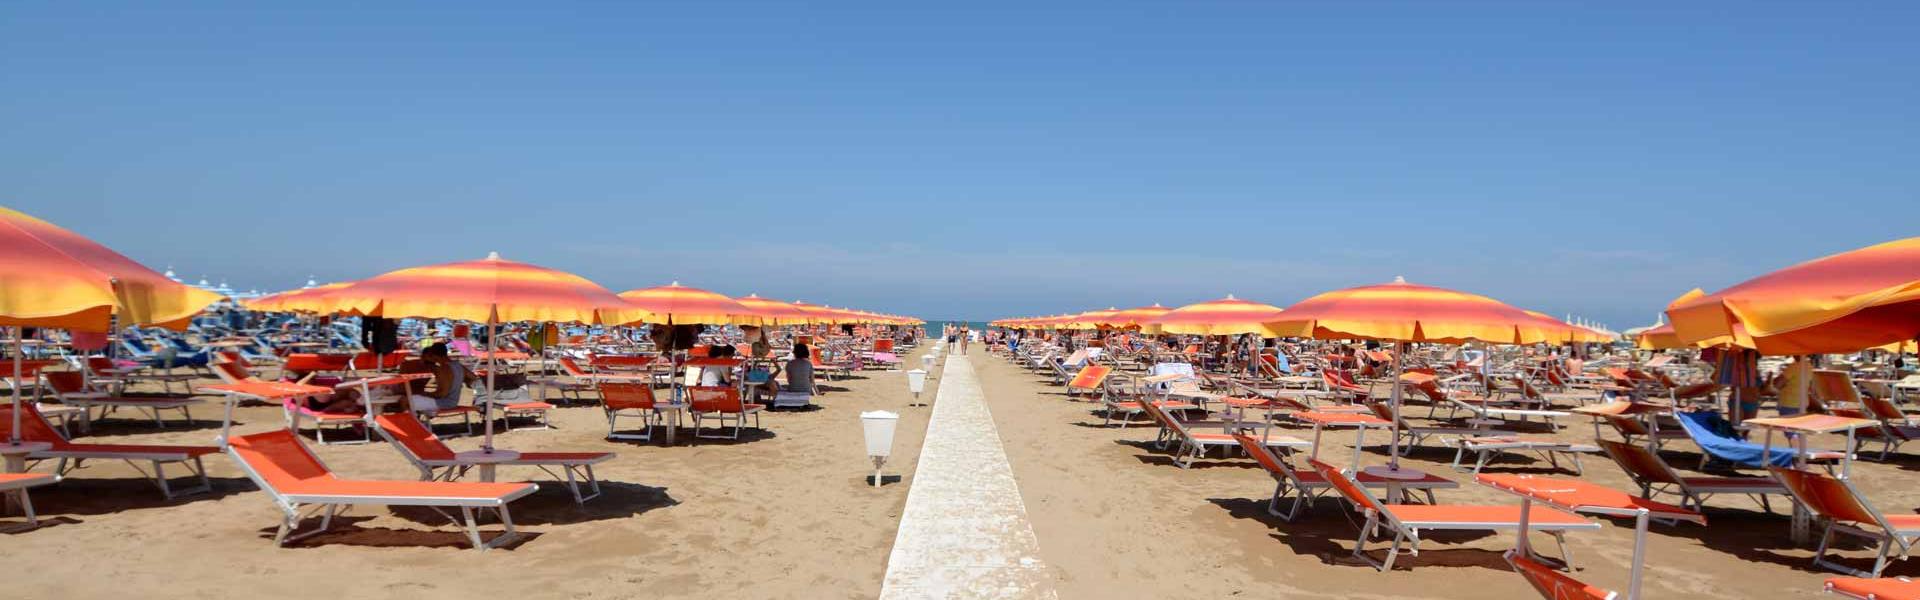 gambrinusrimini en june-offer-in-hotel-for-families-near-the-sea-with-a-pool-in-marebello-di-rimini 012